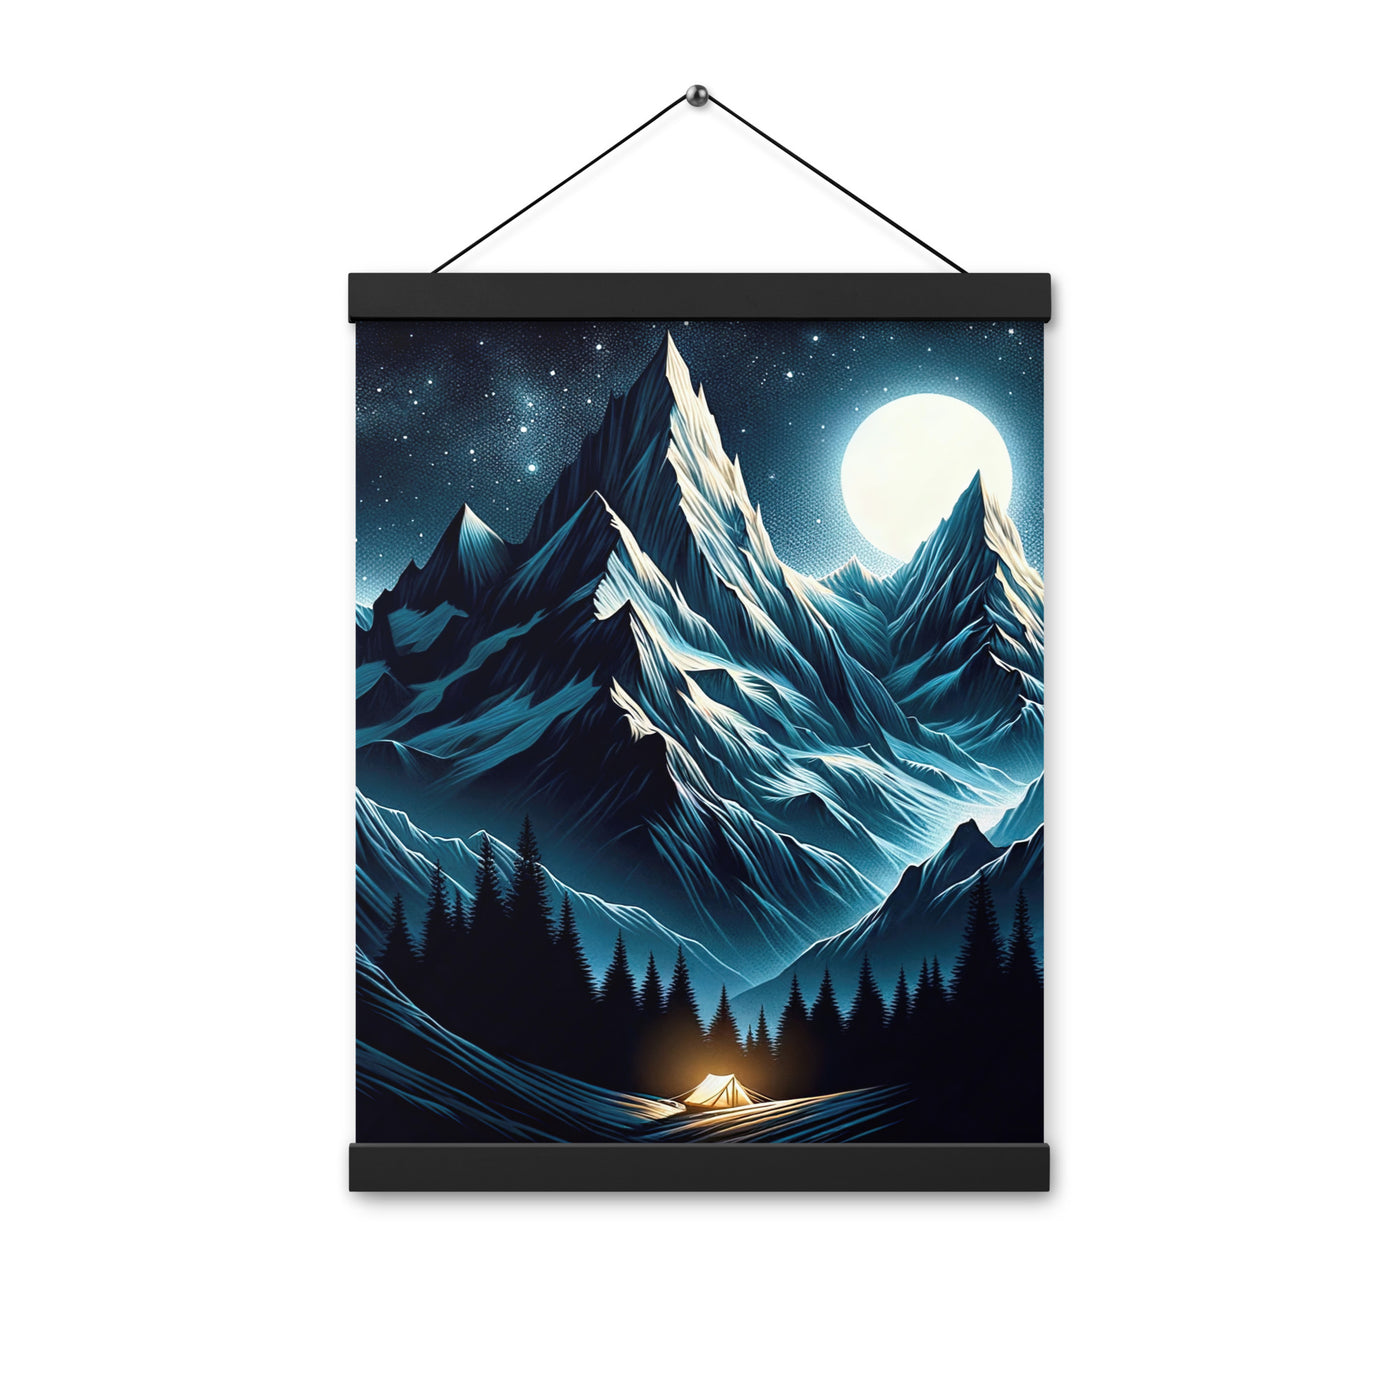 Alpennacht mit Zelt: Mondglanz auf Gipfeln und Tälern, sternenklarer Himmel - Premium Poster mit Aufhängung berge xxx yyy zzz 30.5 x 40.6 cm